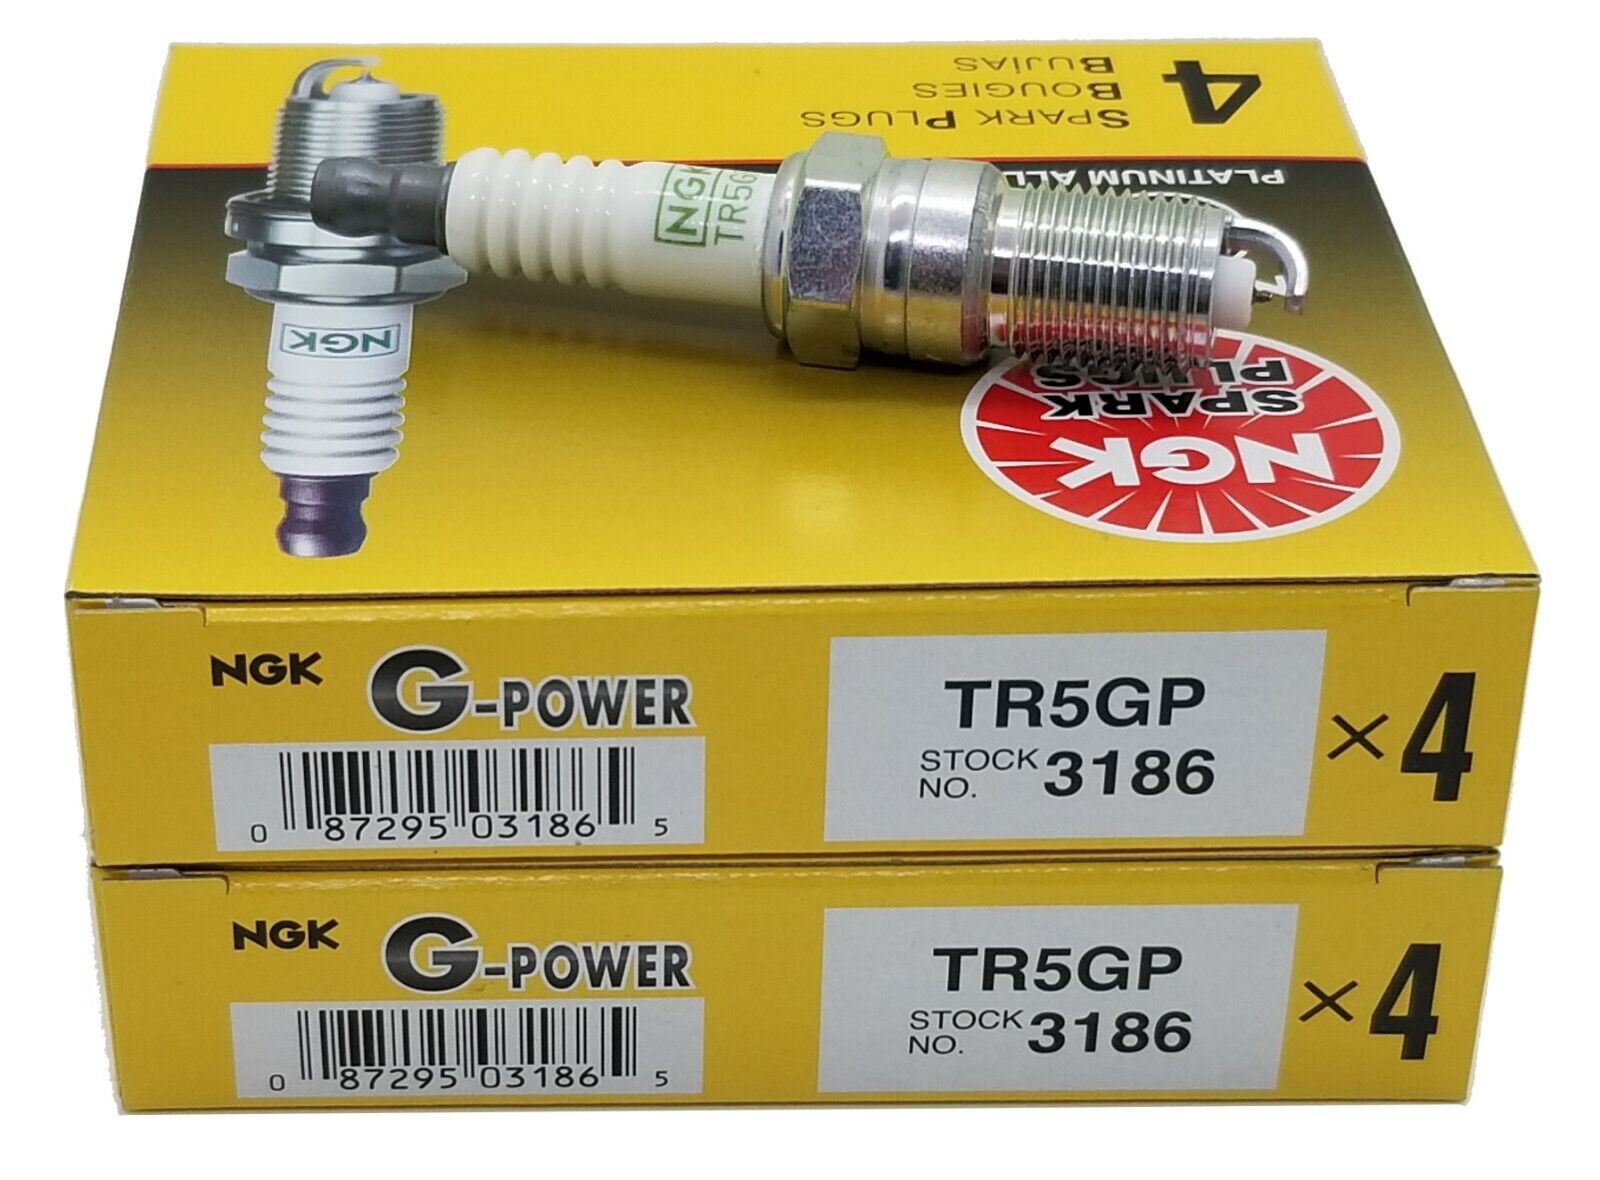 8 Plugs NGK TR5GP/3186 G-POWER Platinum Spark Plugs